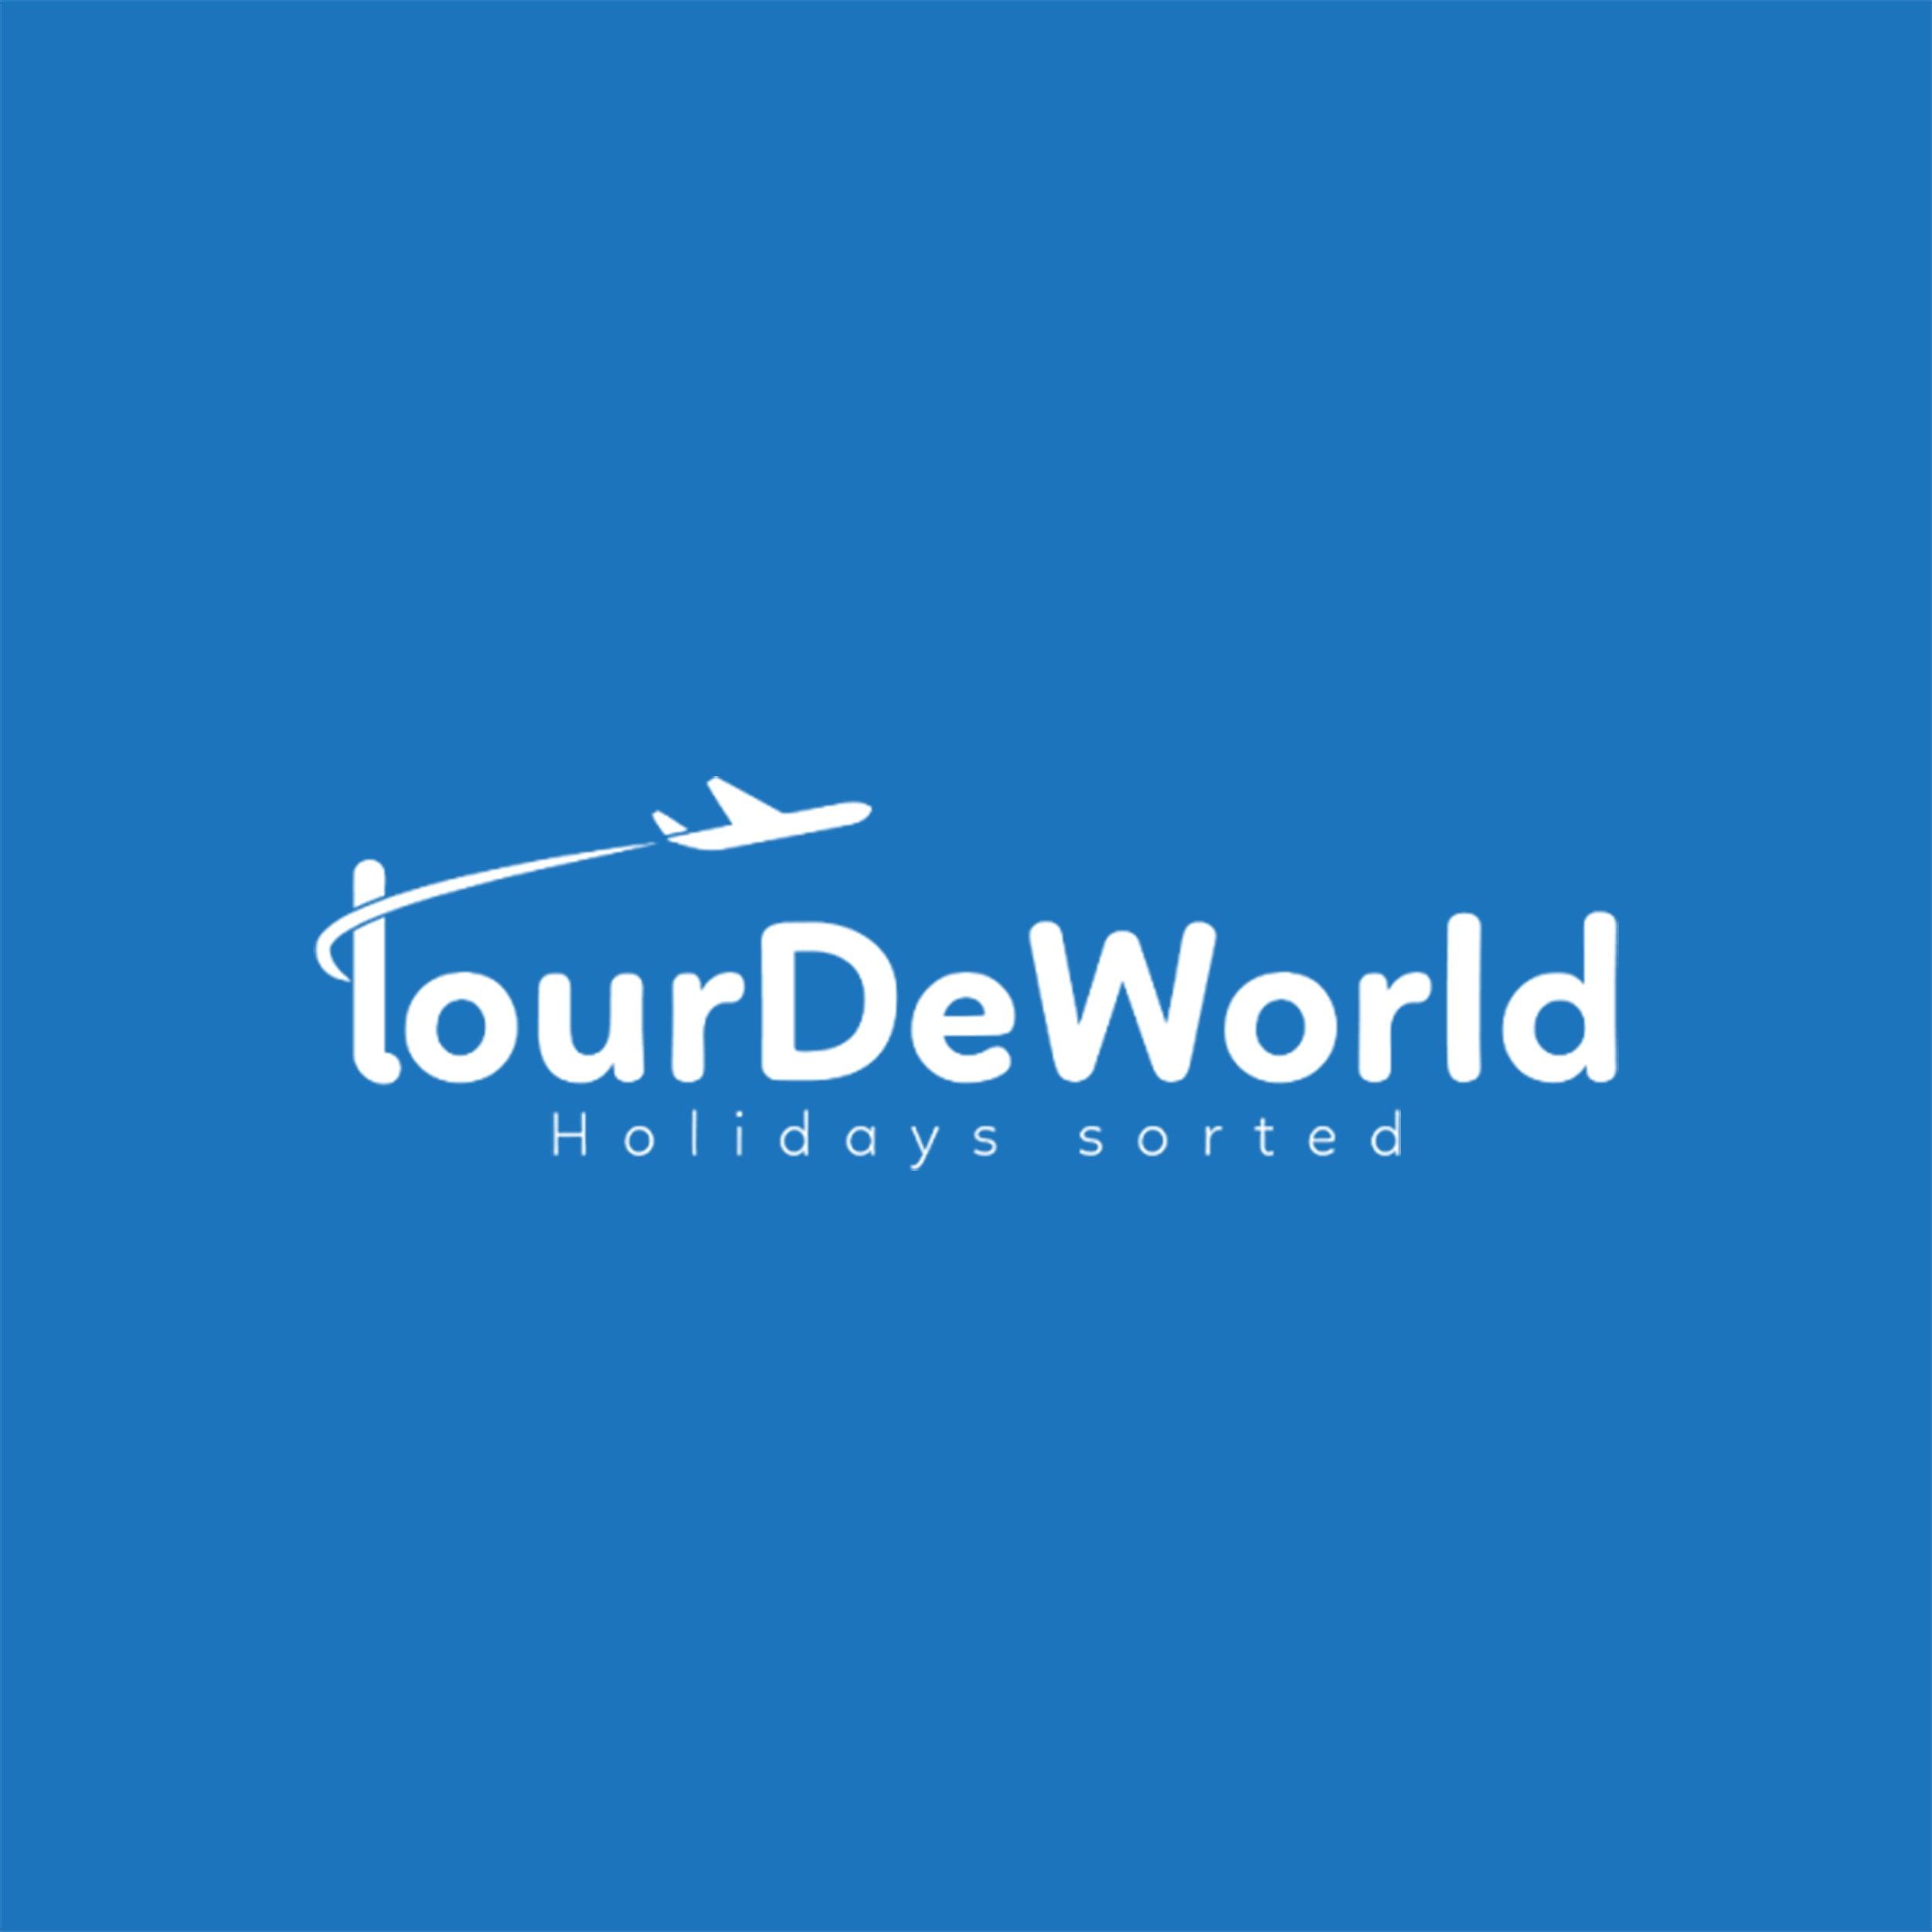 TourDeWorld